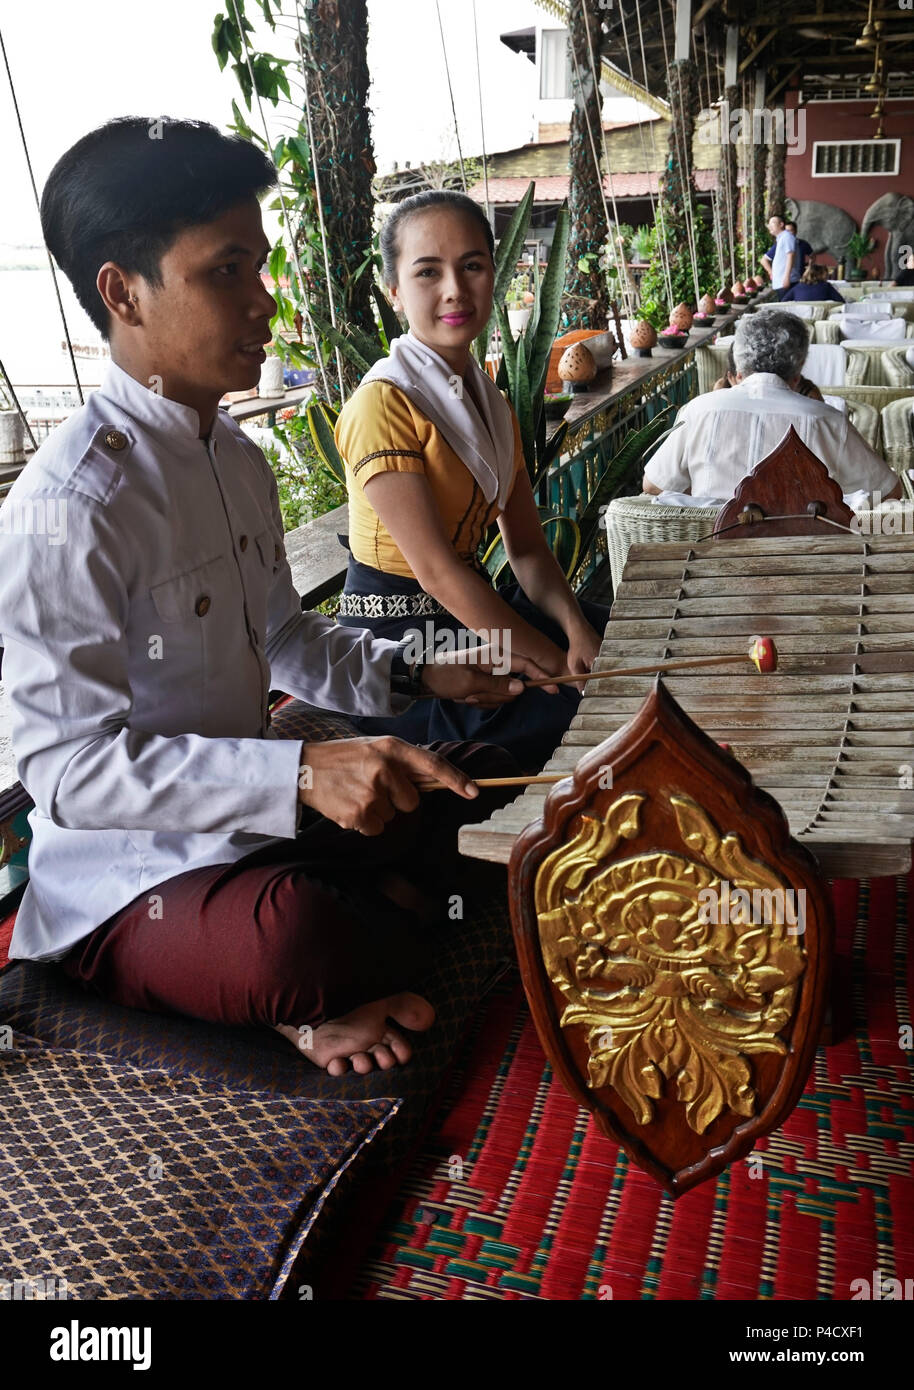 Titanic restaurant musicians, Phnom Penh, Cambodia Stock Photo